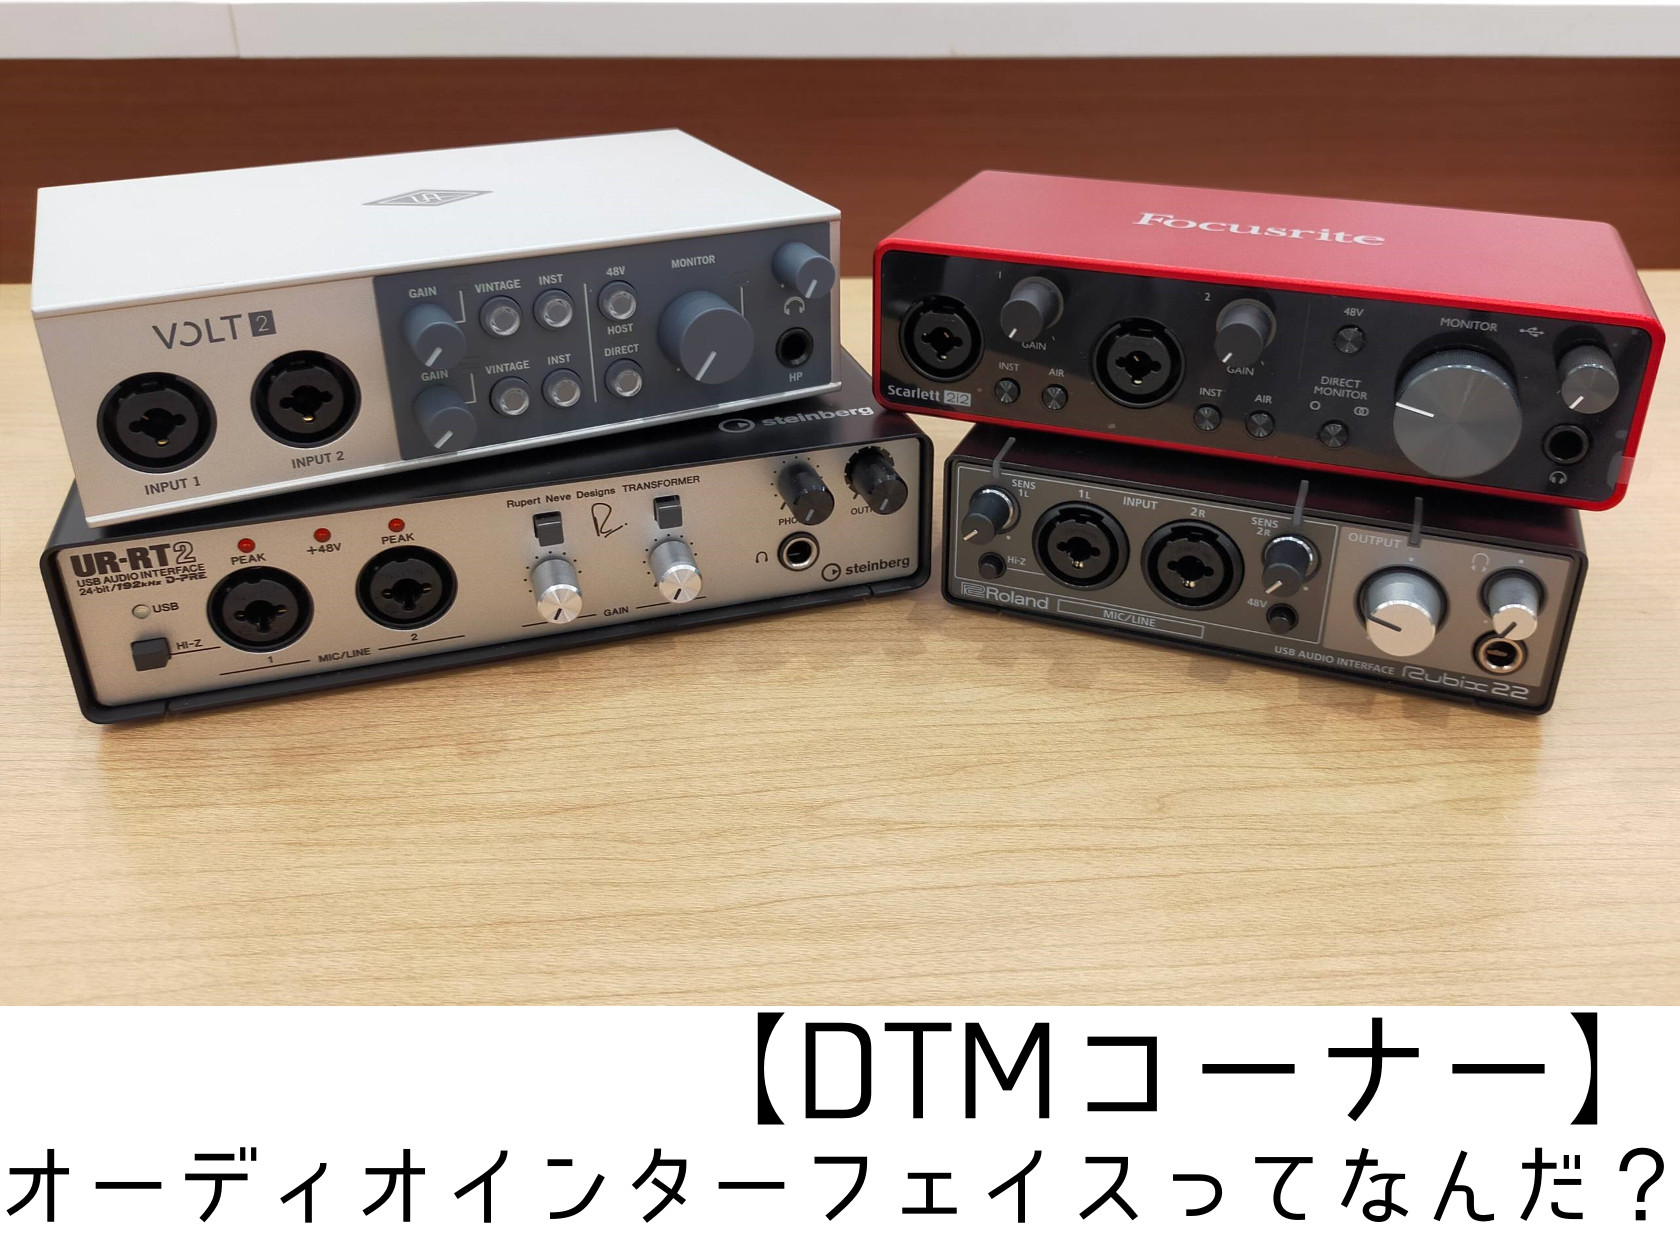 DTMを行う上で、必要な機材である「オーディオインターフェイス」。
どんな機械なのか、なぜDTMに必要なのかを解説していきます。